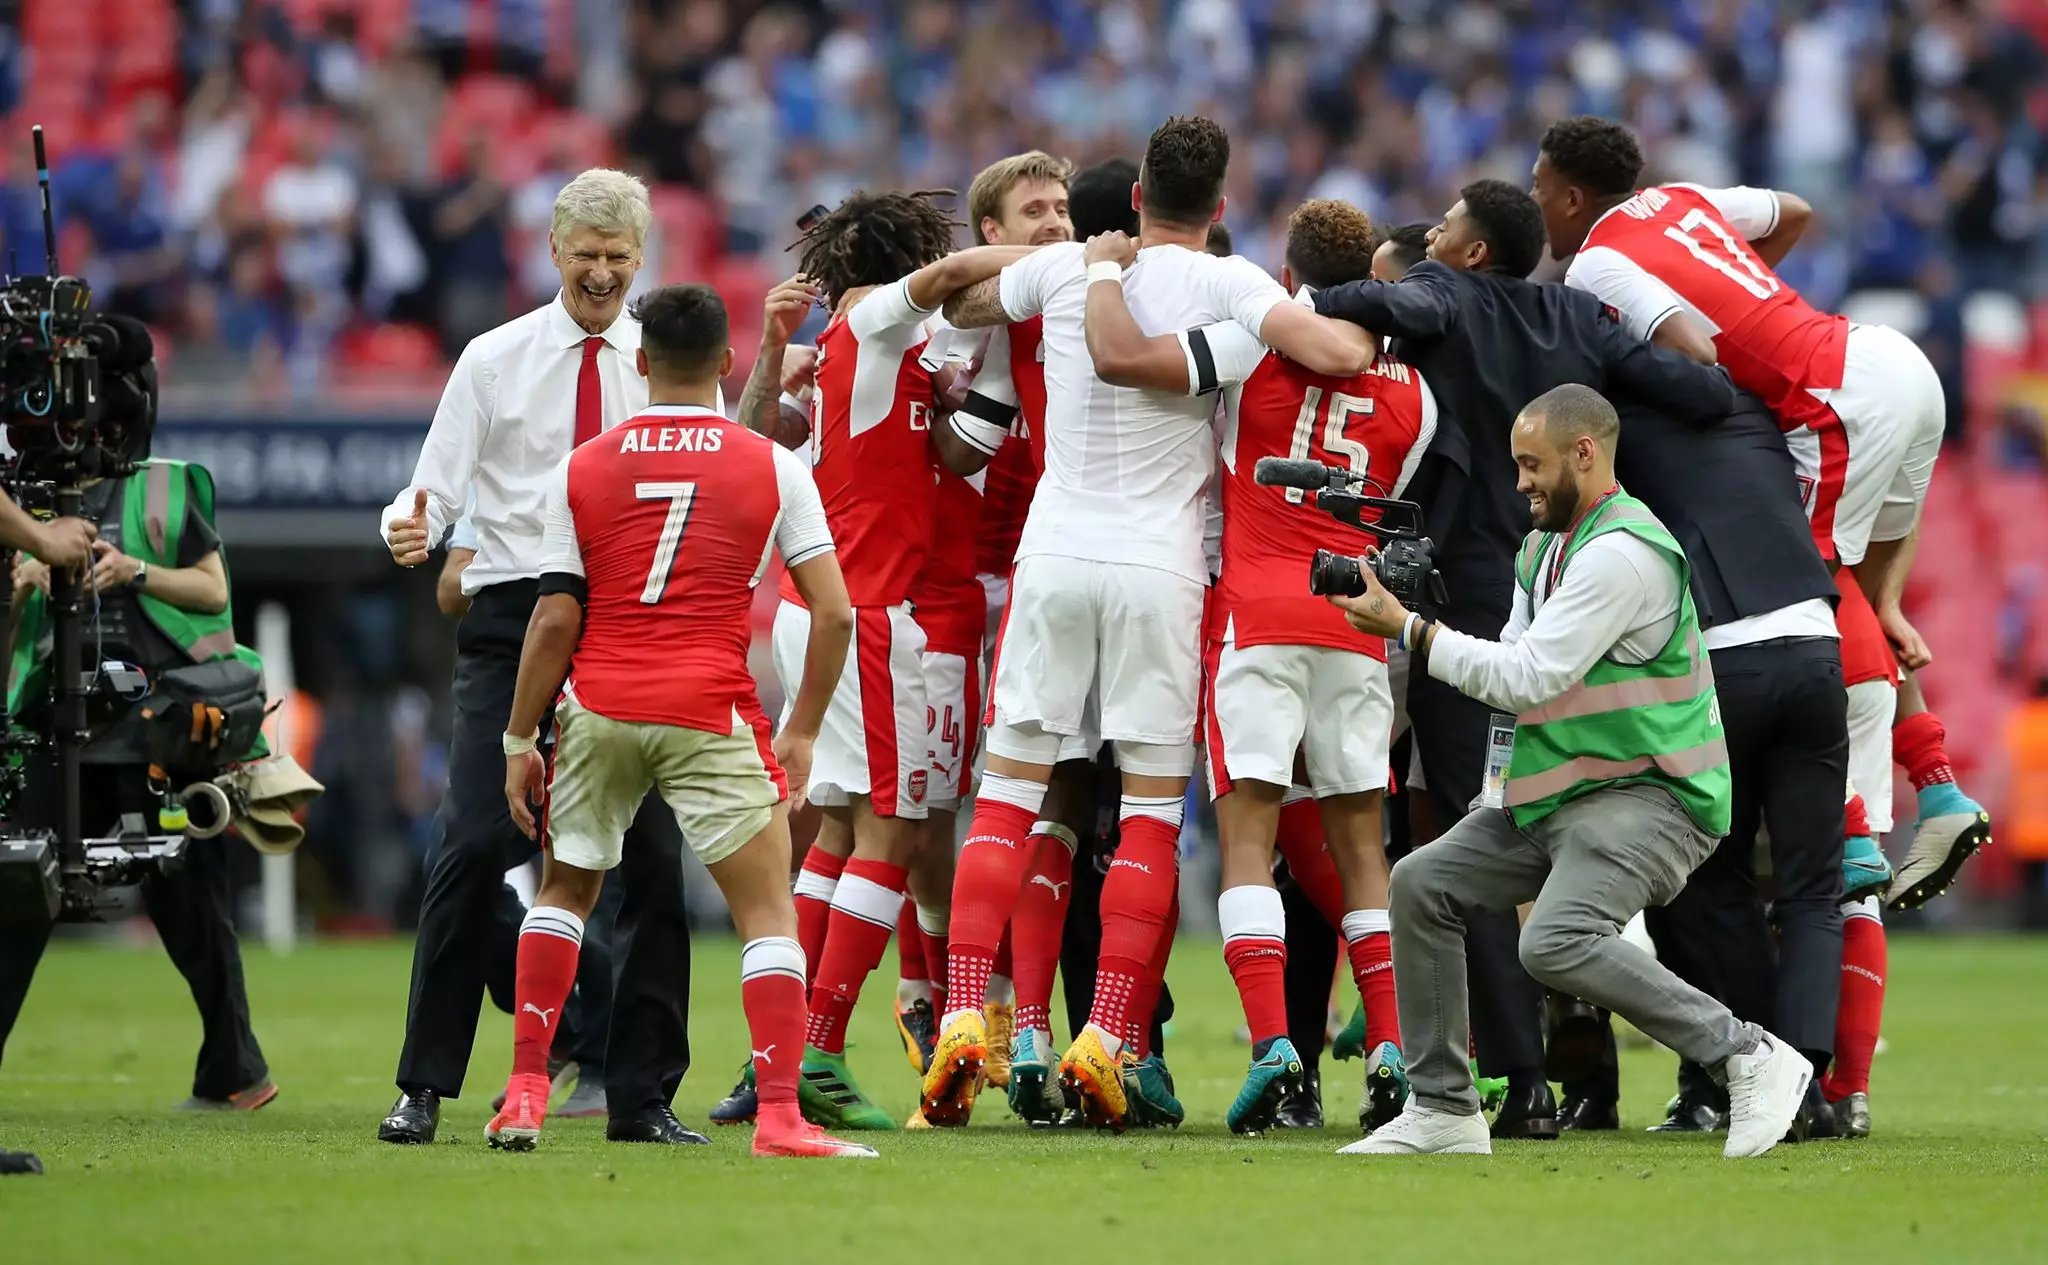 Arsenal players celebrate winning the FA Cup. Image: PA